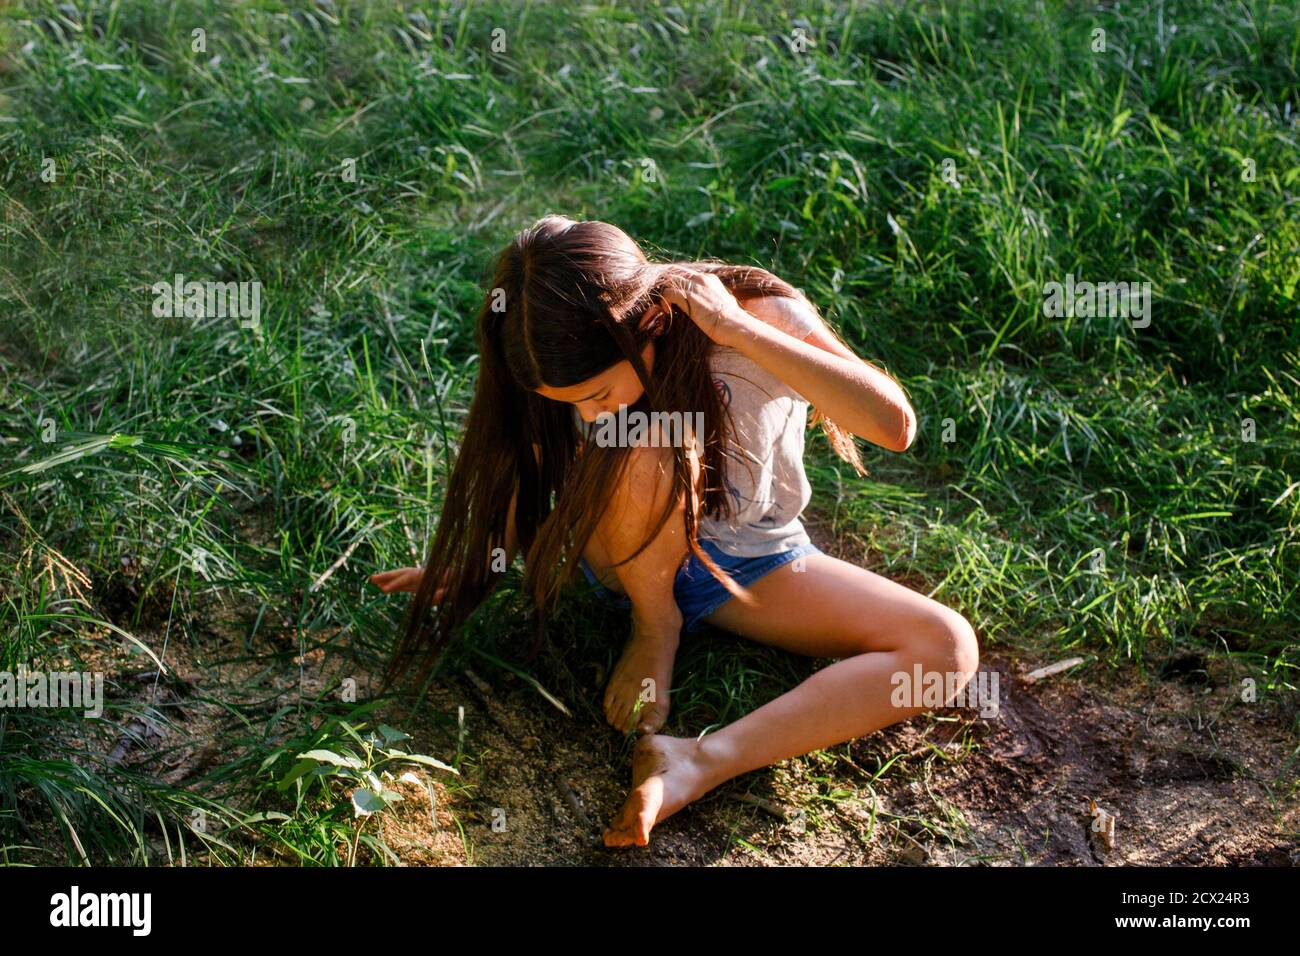 Oben-Ansicht des jungen Mädchens, das im Gras mit schlammigen Füßen sitzt Bei Sonnenschein Stockfoto